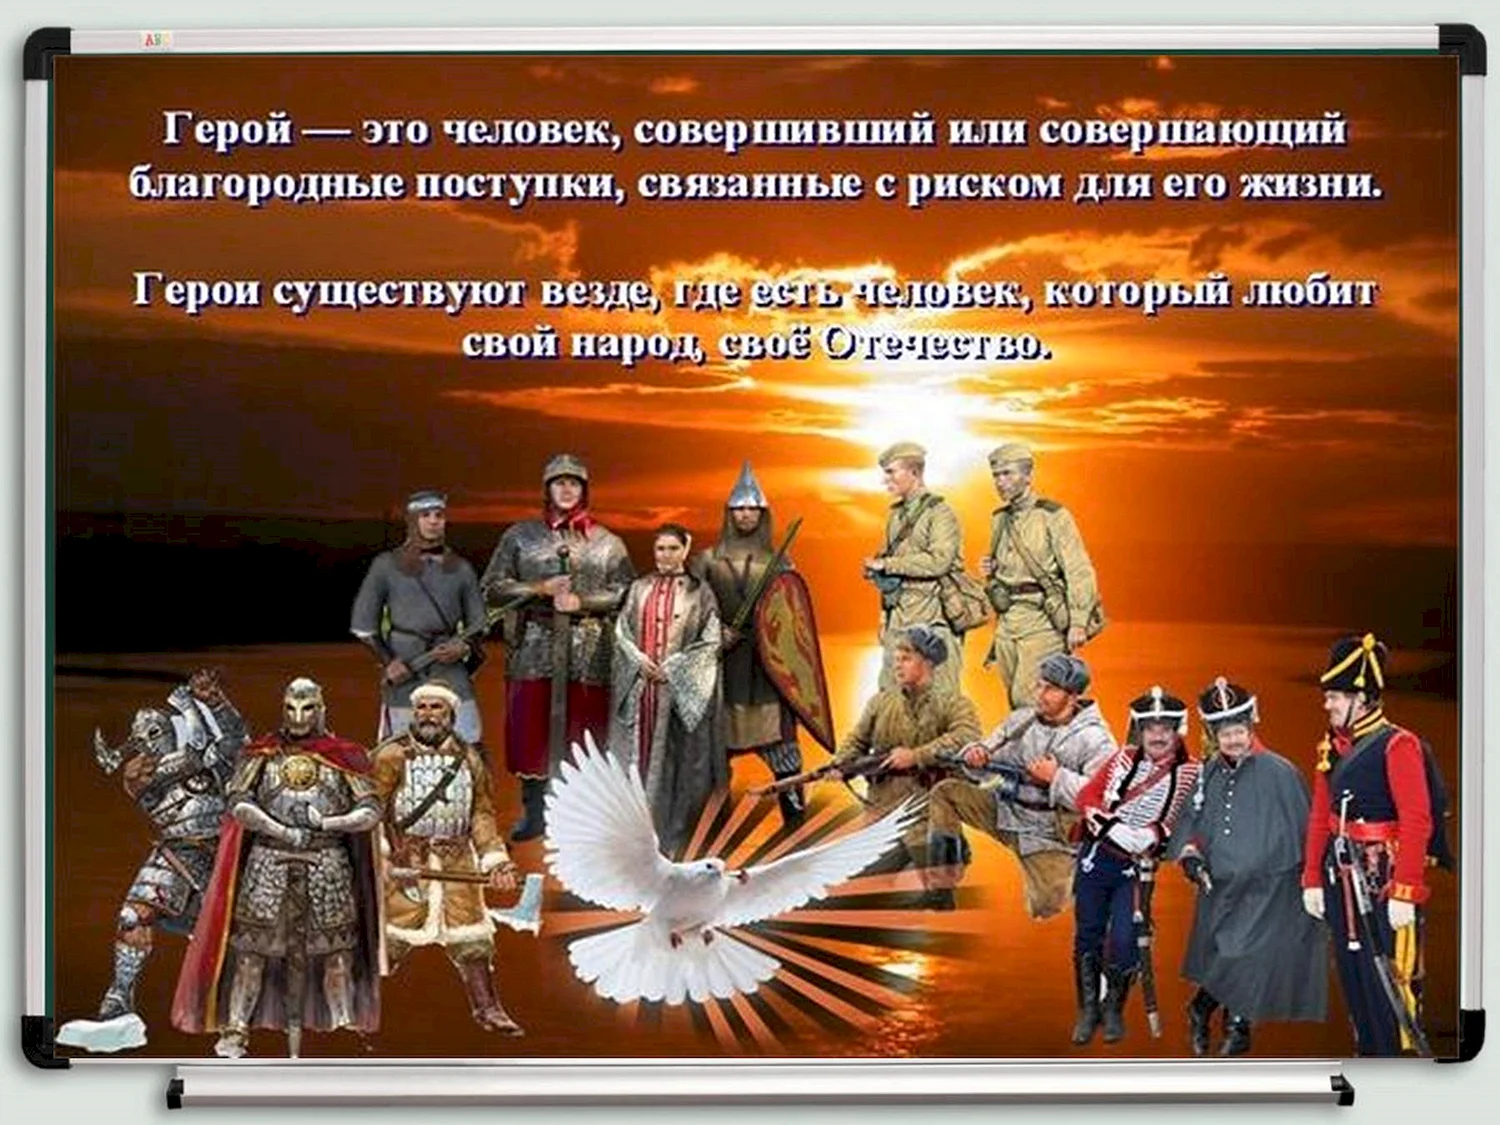 9 декабря день героев отечества